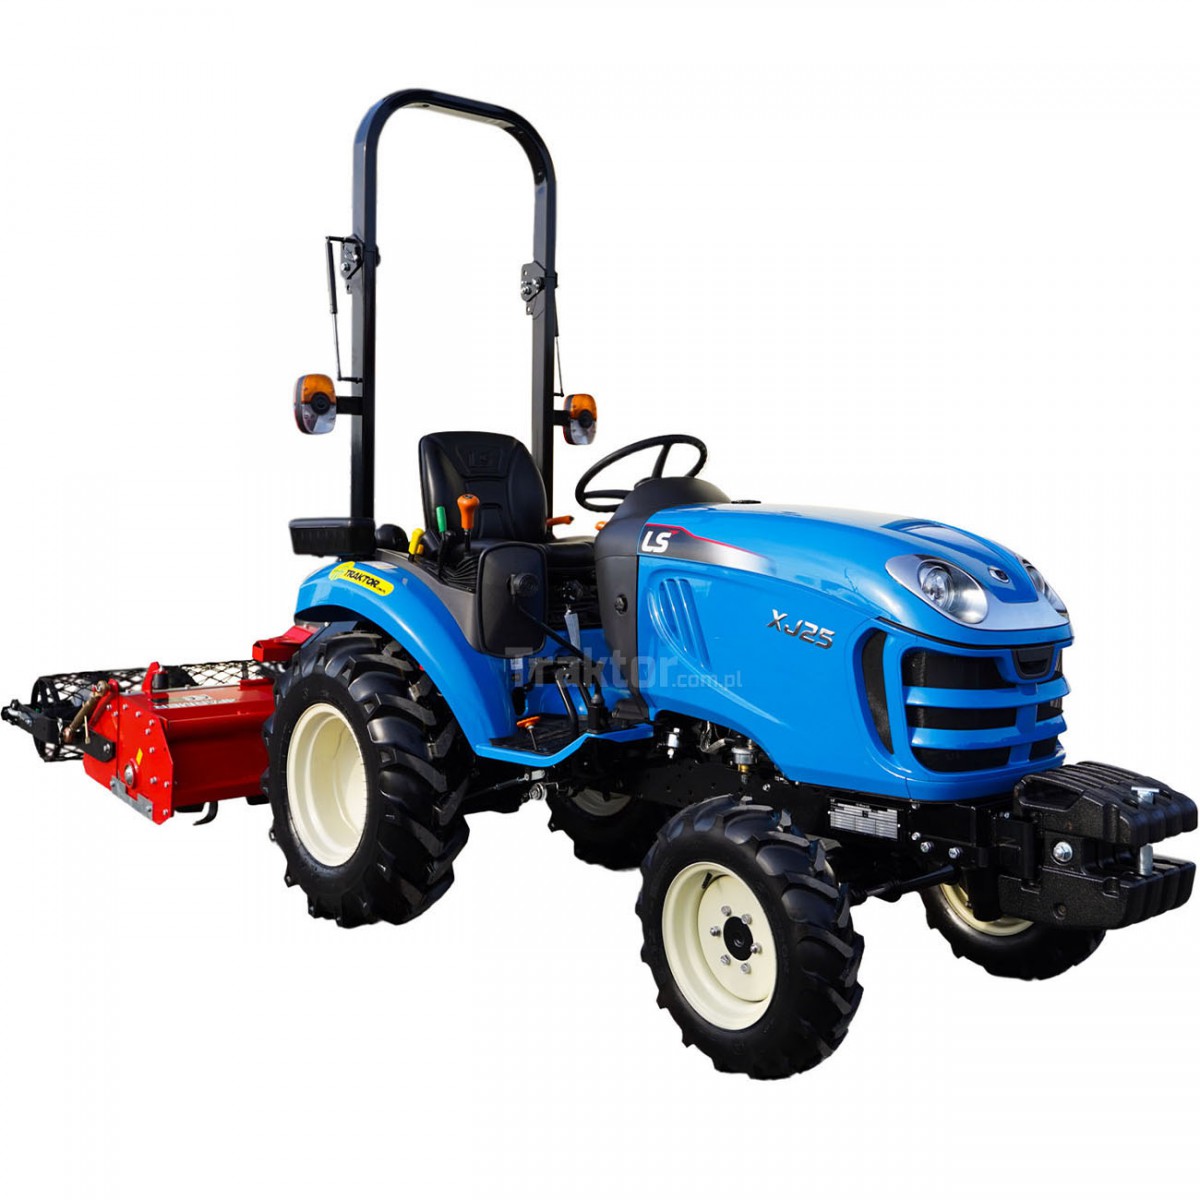 LS Traktor XJ25 MEC 4x4 - 24,4 HP + separačná kultivátor SB 125 4FARMER